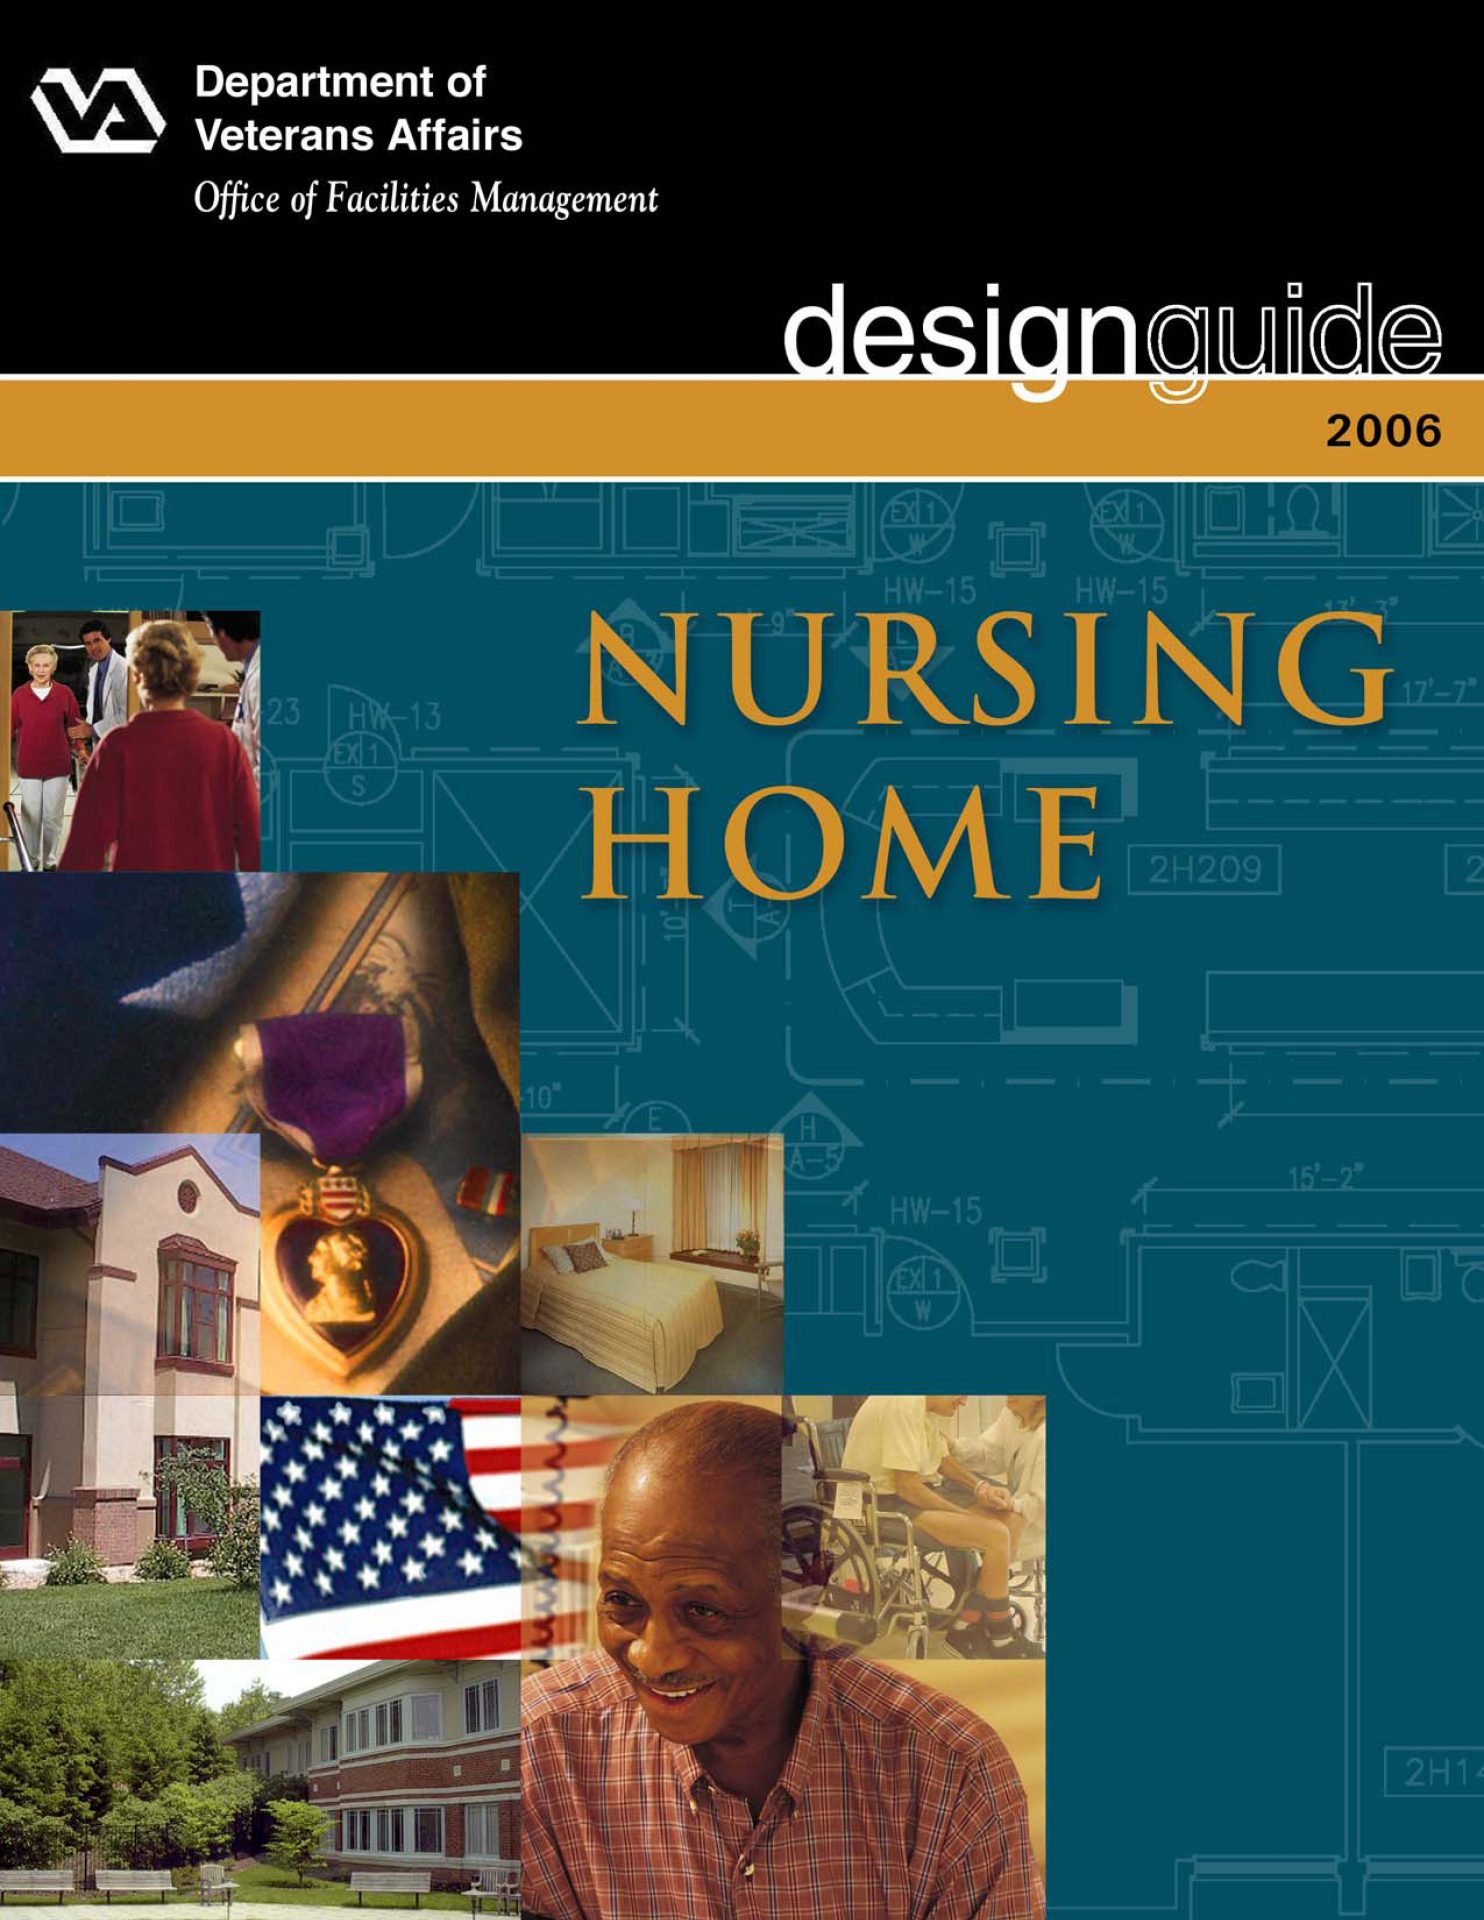 https://www.ebapc.com/wp-content/uploads/2020/08/Nursing-Home-Design-Guide-Cover.jpg